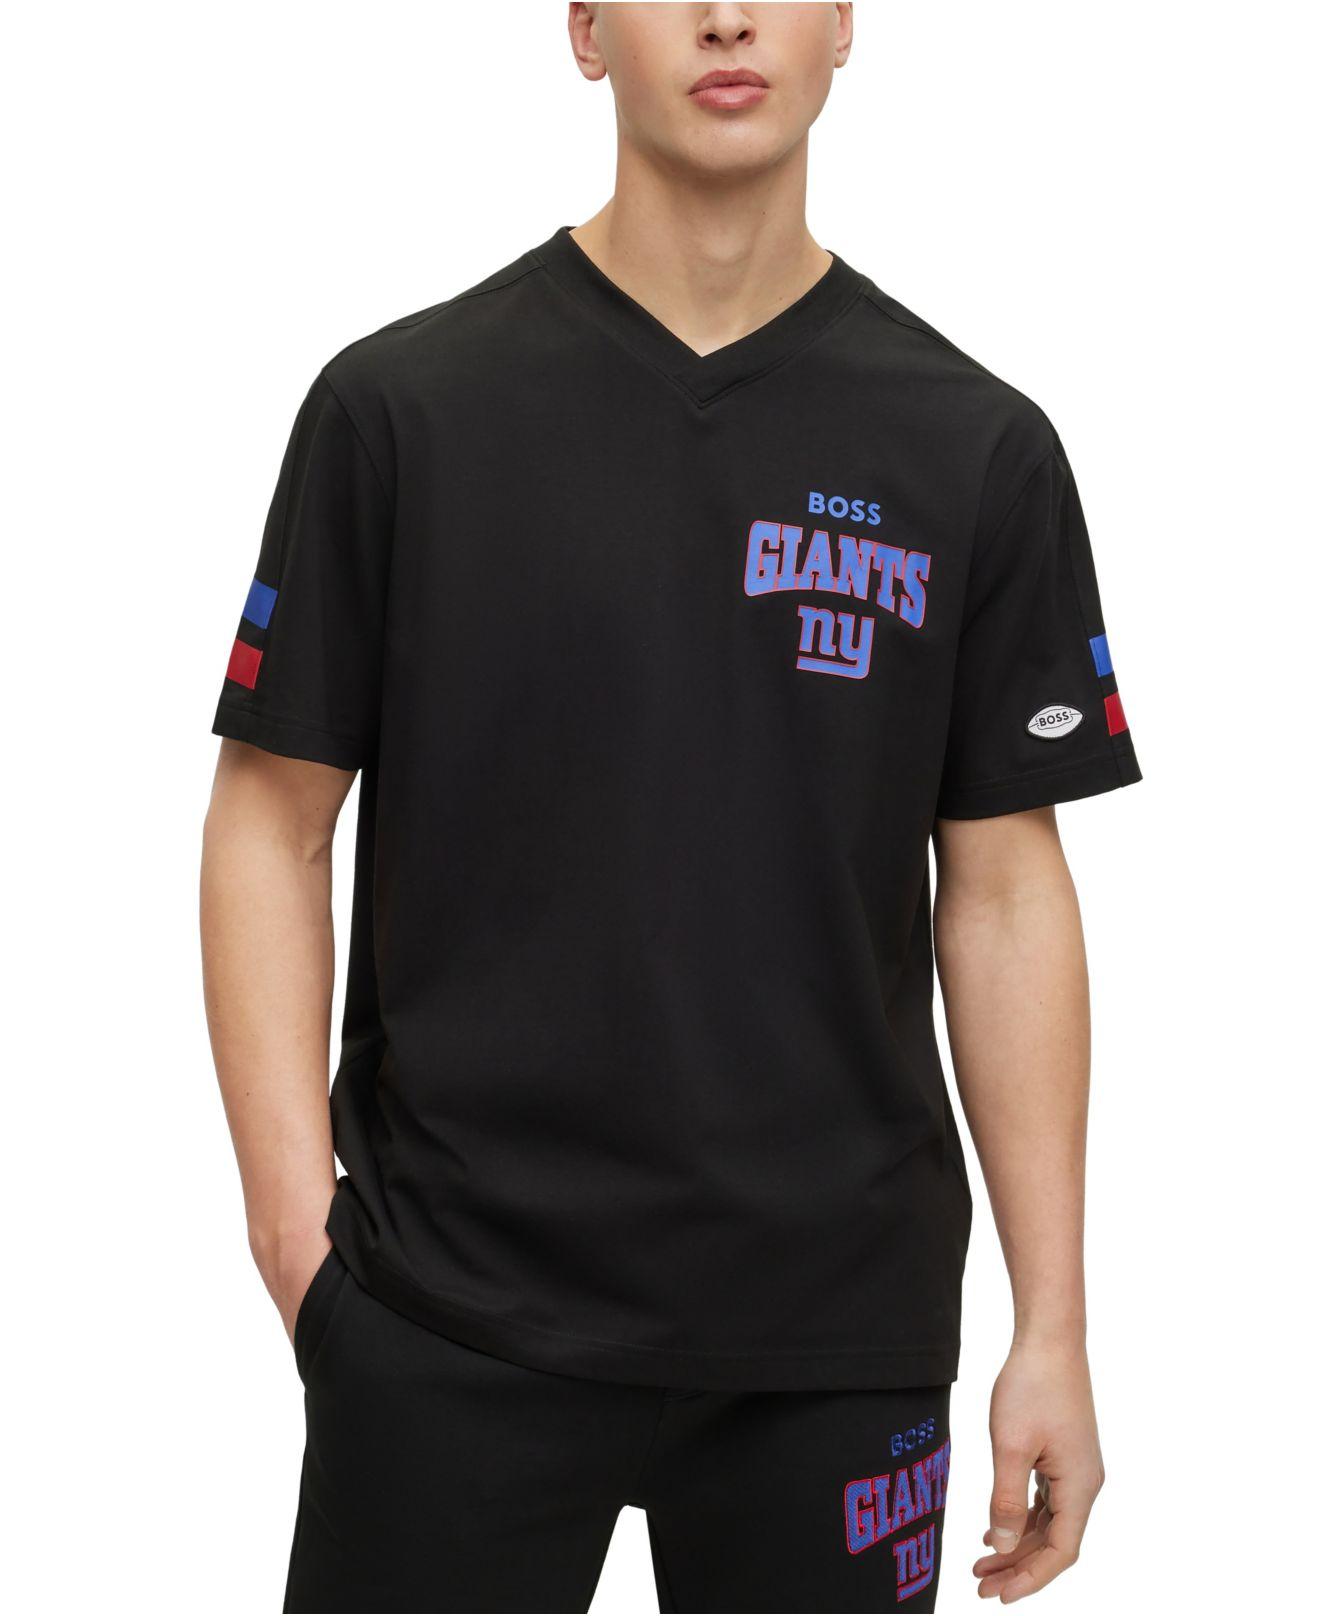 BOSS by HUGO BOSS New York Giants T-shirt in Black for Men